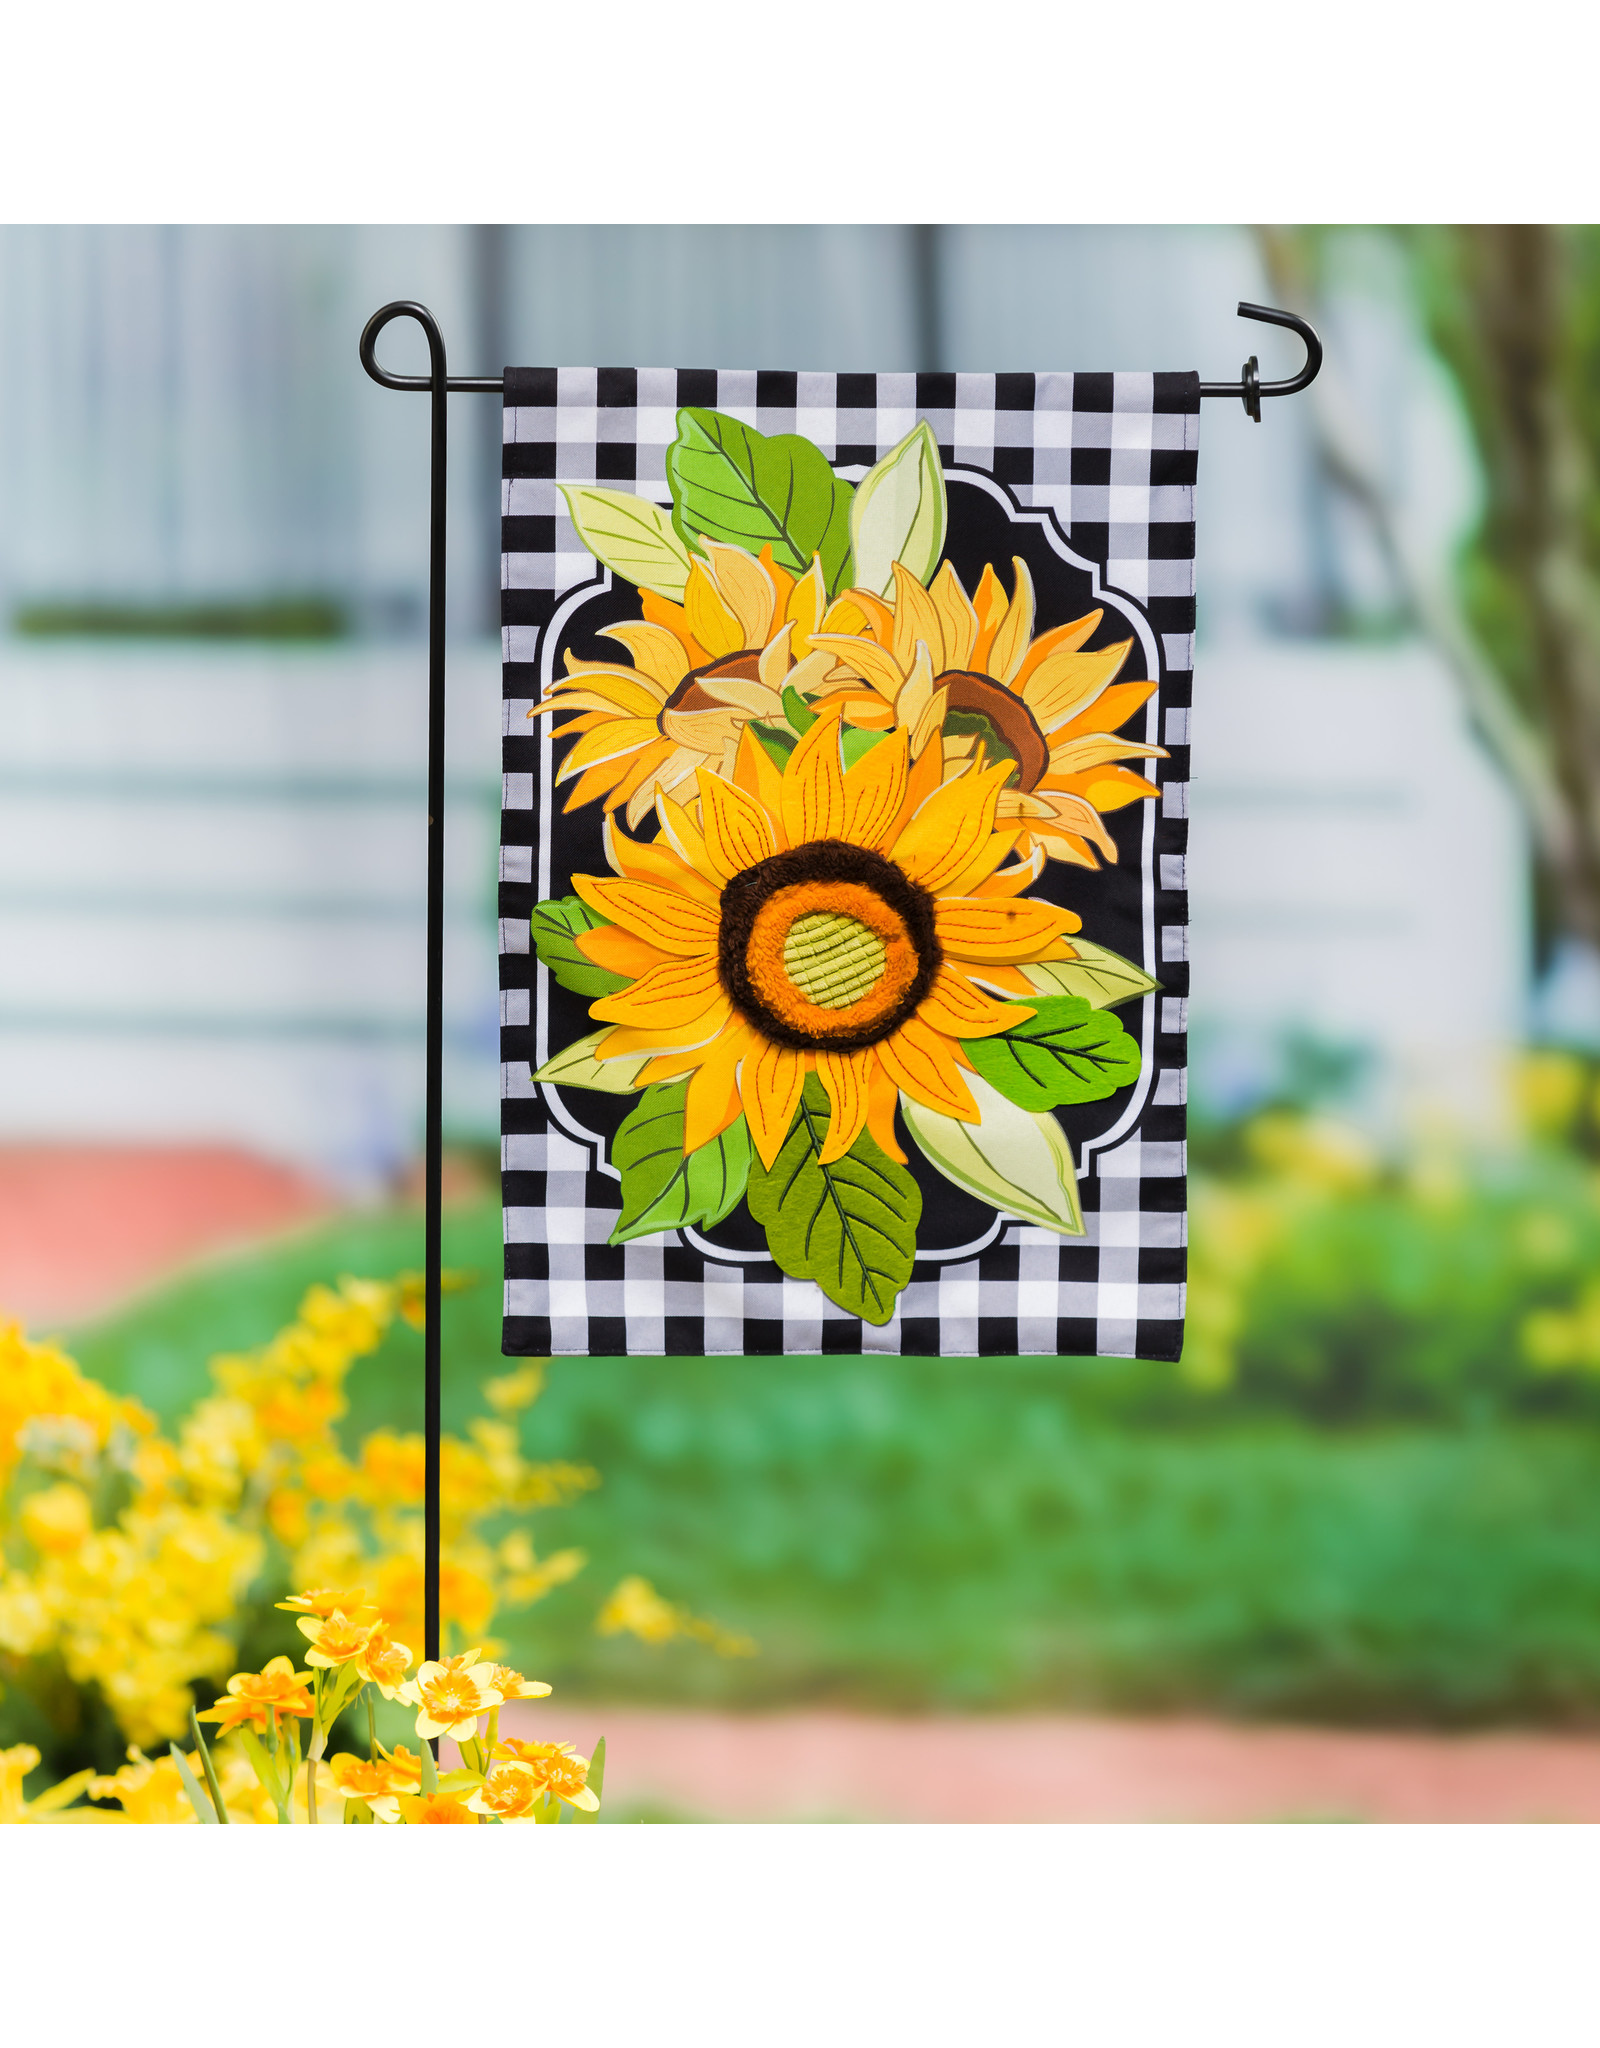 Evergreen Enterprises Sunflowers and Checks Garden Linen Flag